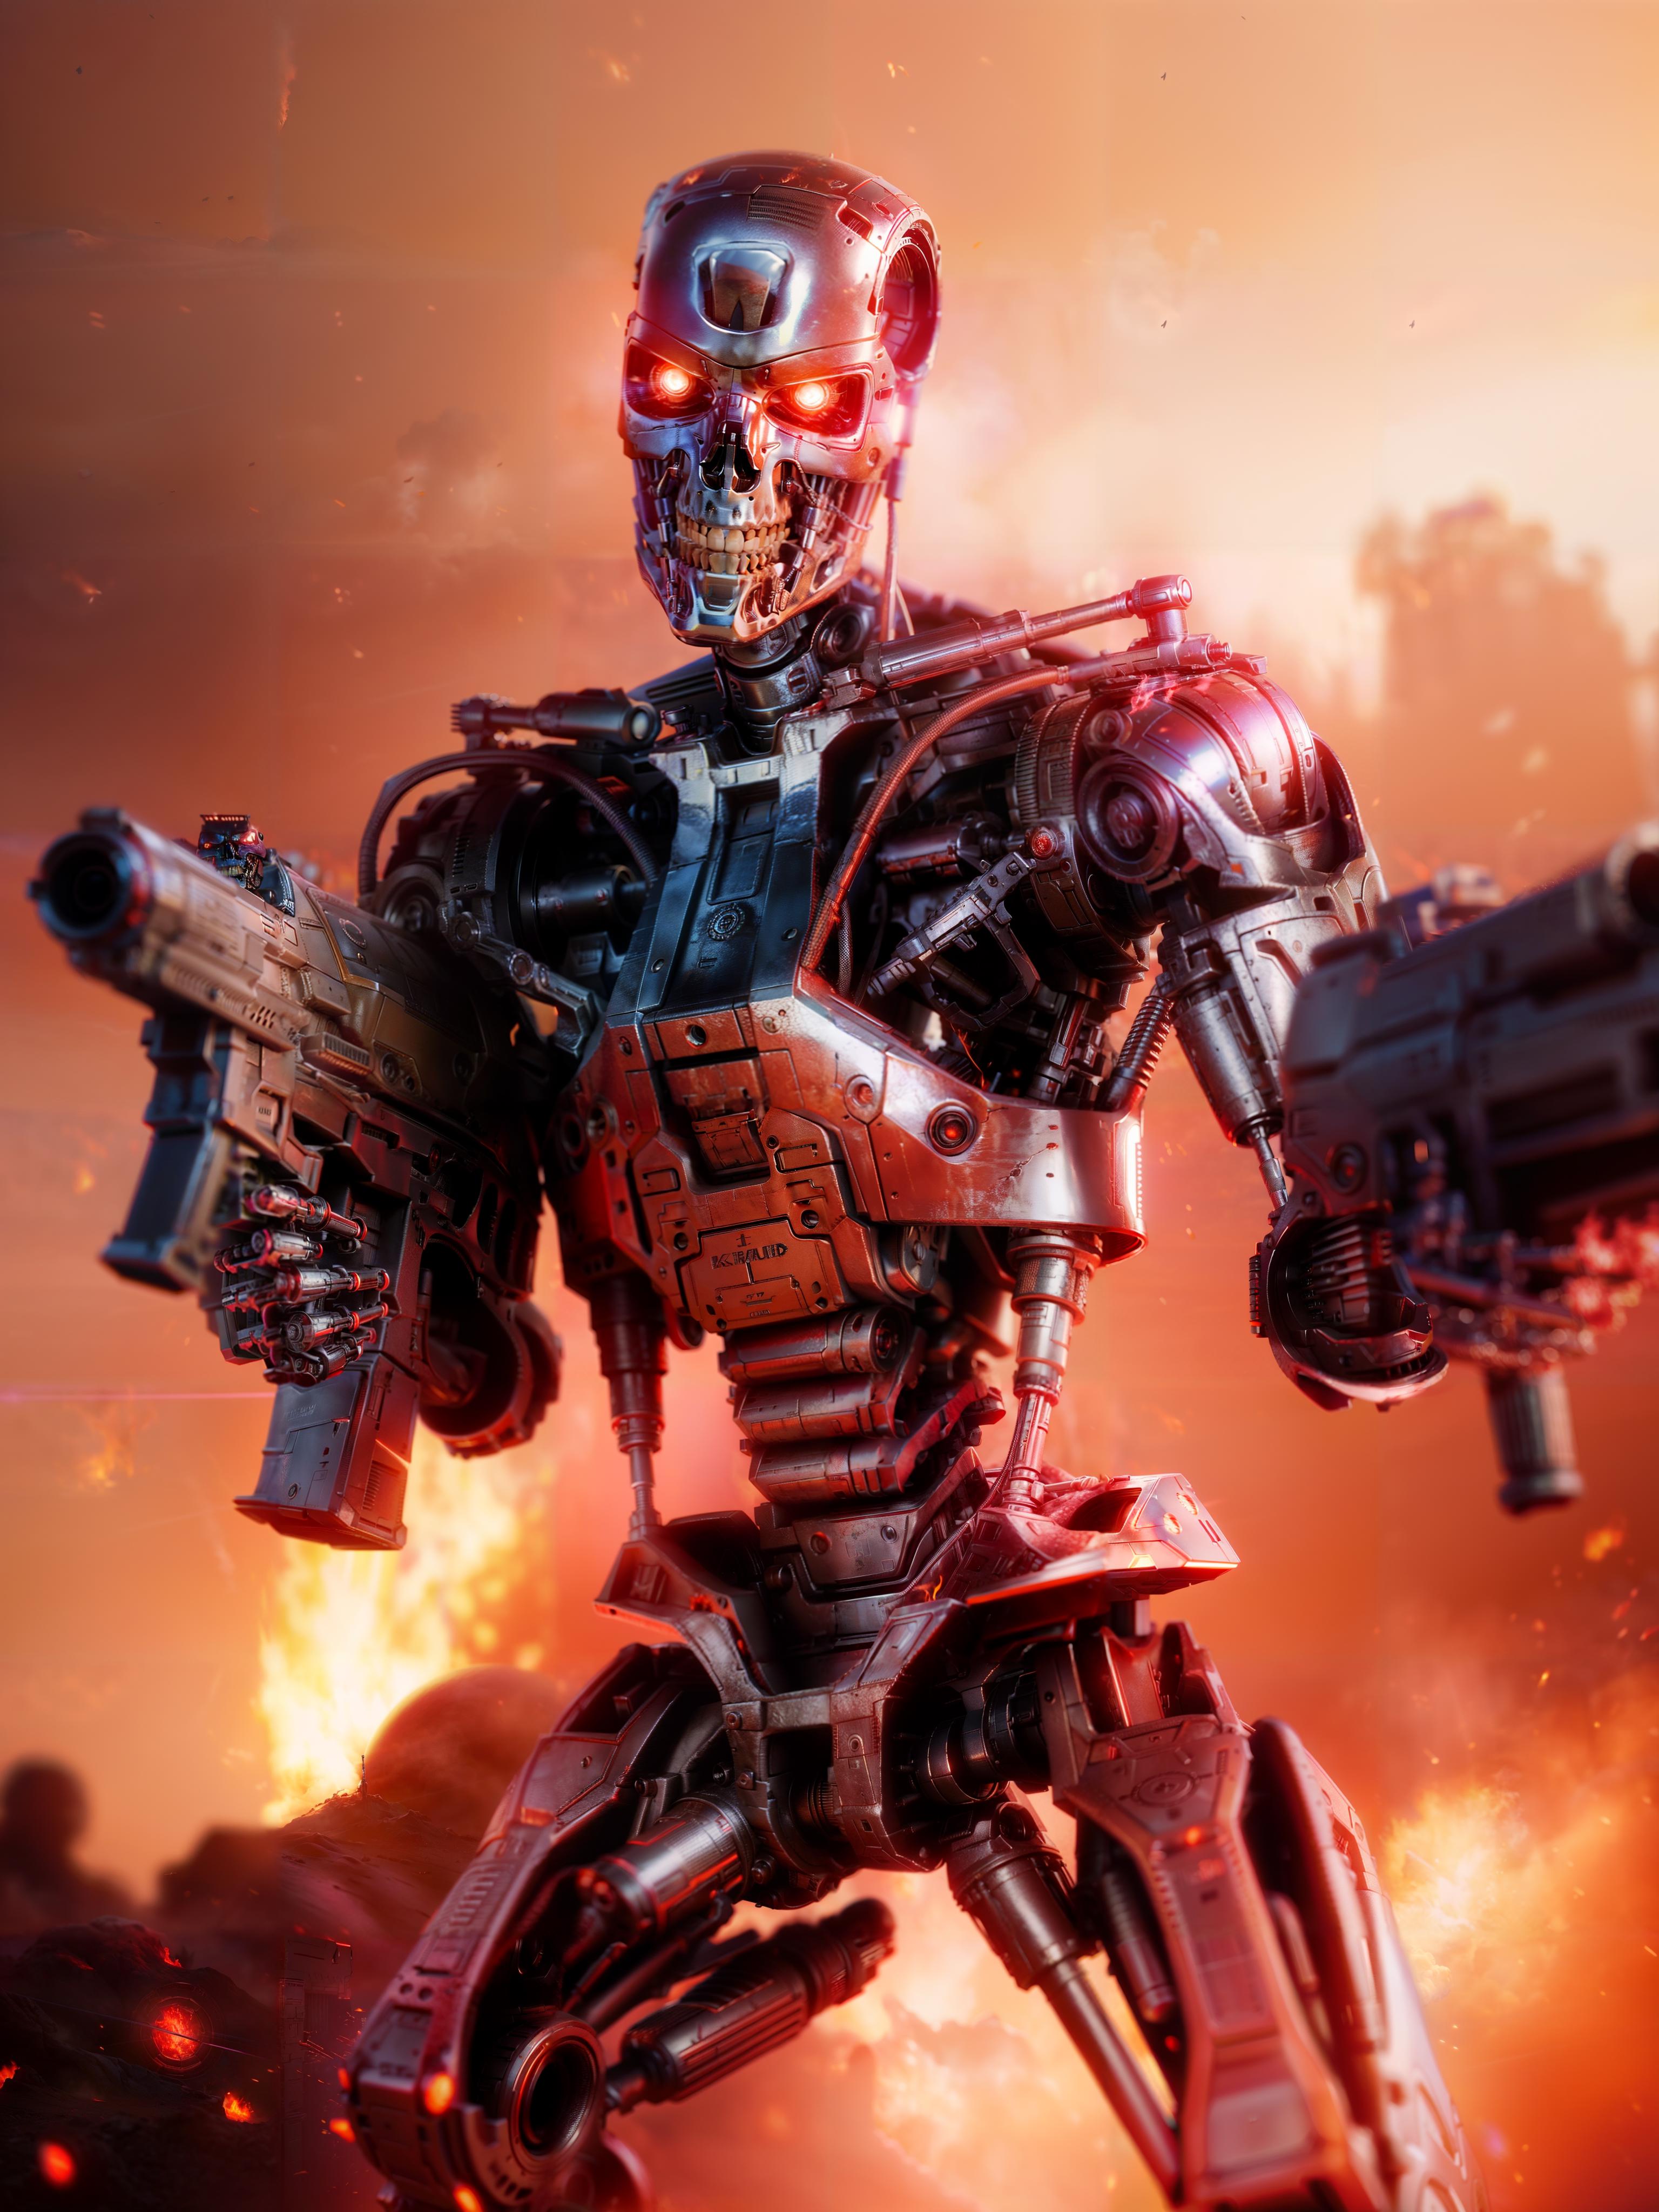 T800 Terminator Endoskeleton image by RYUSEIKENVT